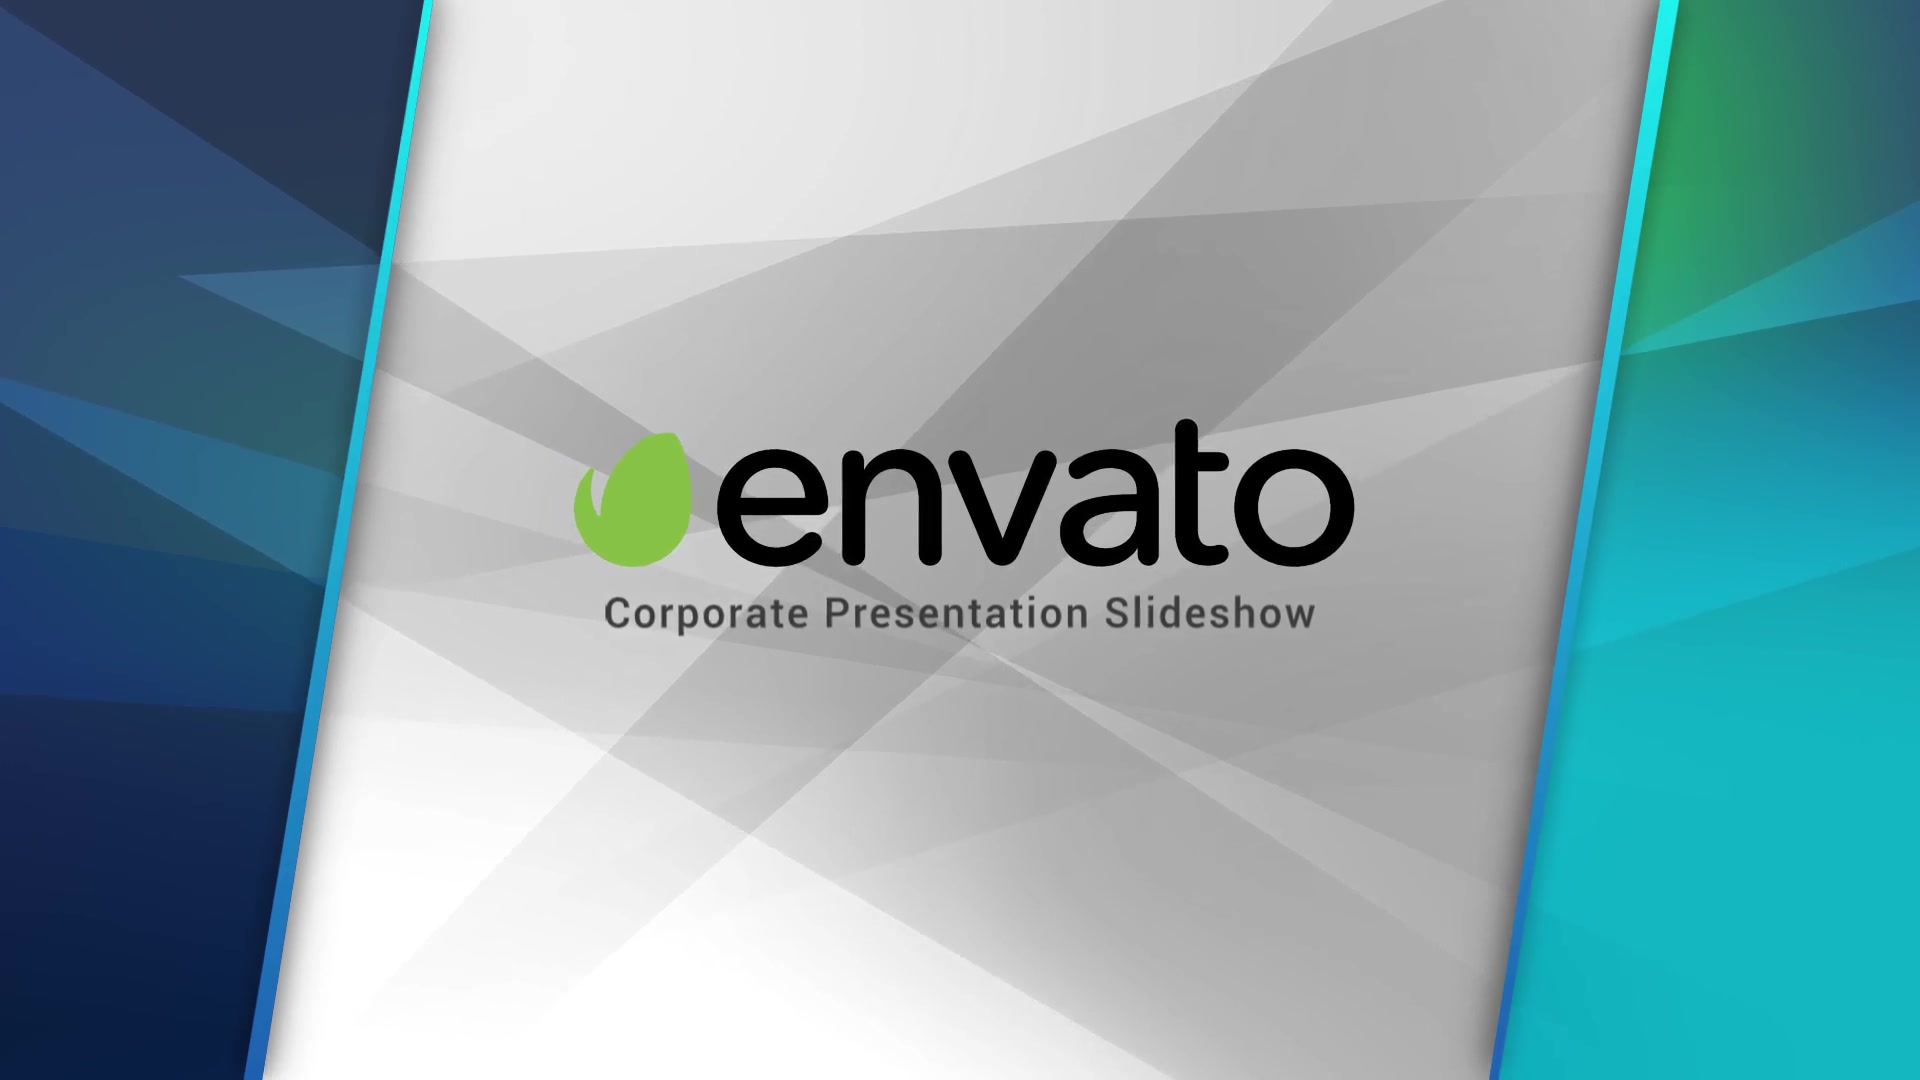 Corporate Presentation Slideshow Videohive 25062109 Premiere Pro Image 13